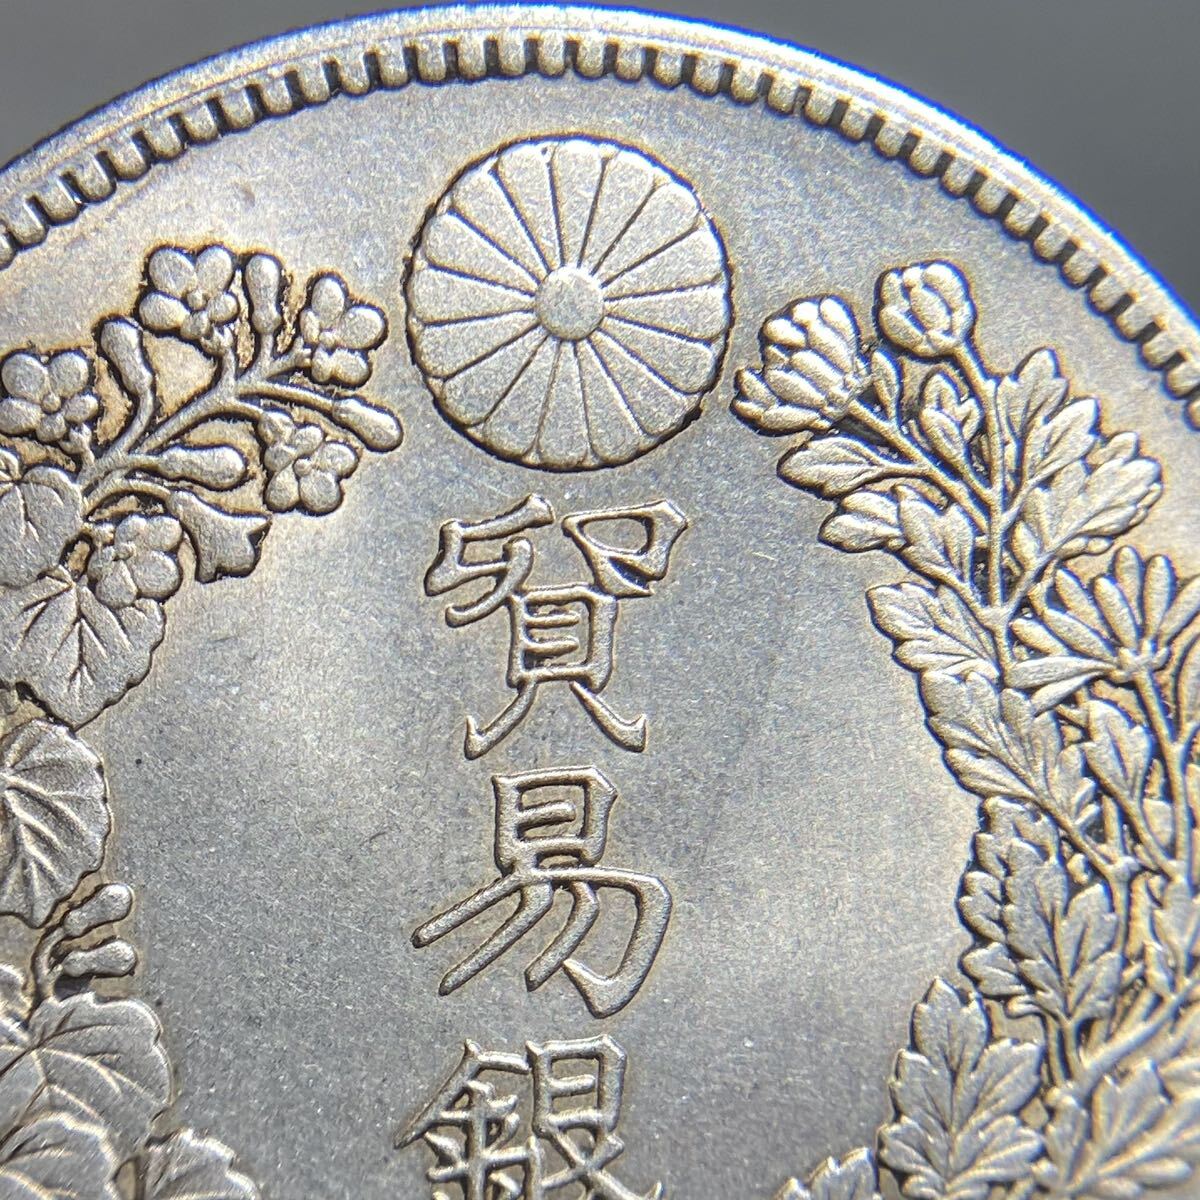 日本 古銭 貿易銀 銀貨 明治8年 約26.49g 一円貨幣 硬貨骨董品コインの画像3